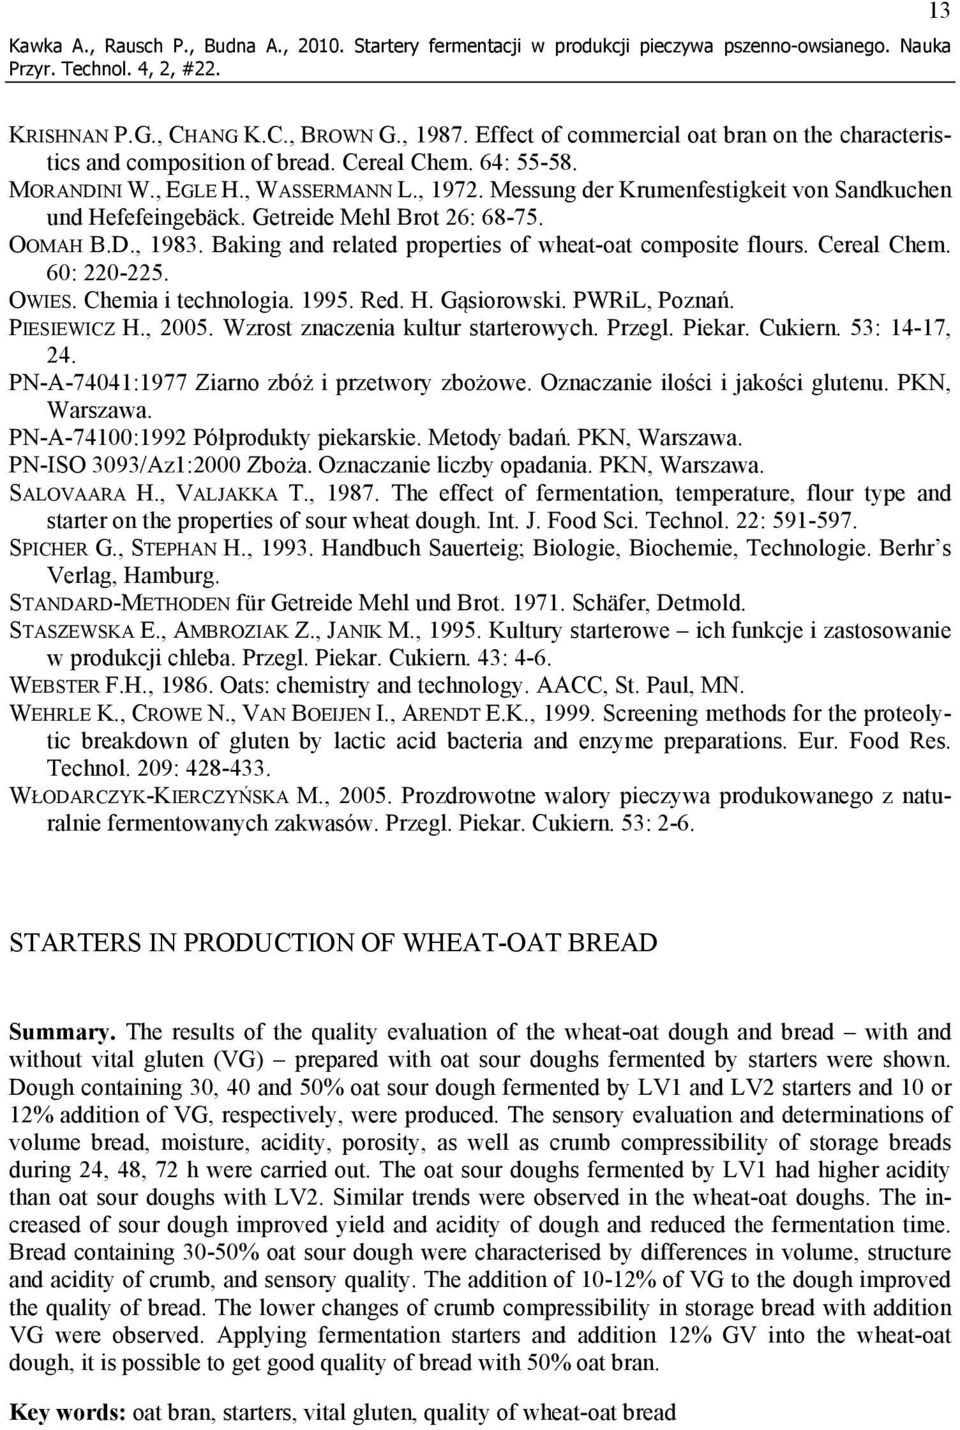 Messung der Krumenfestigkeit von Sandkuchen und Hefefeingebäck. Getreide Mehl Brot 26: 68-75. OOMAH B.D., 1983. Baking and related properties of wheat-oat composite flours. Cereal Chem. 60: 220-225.